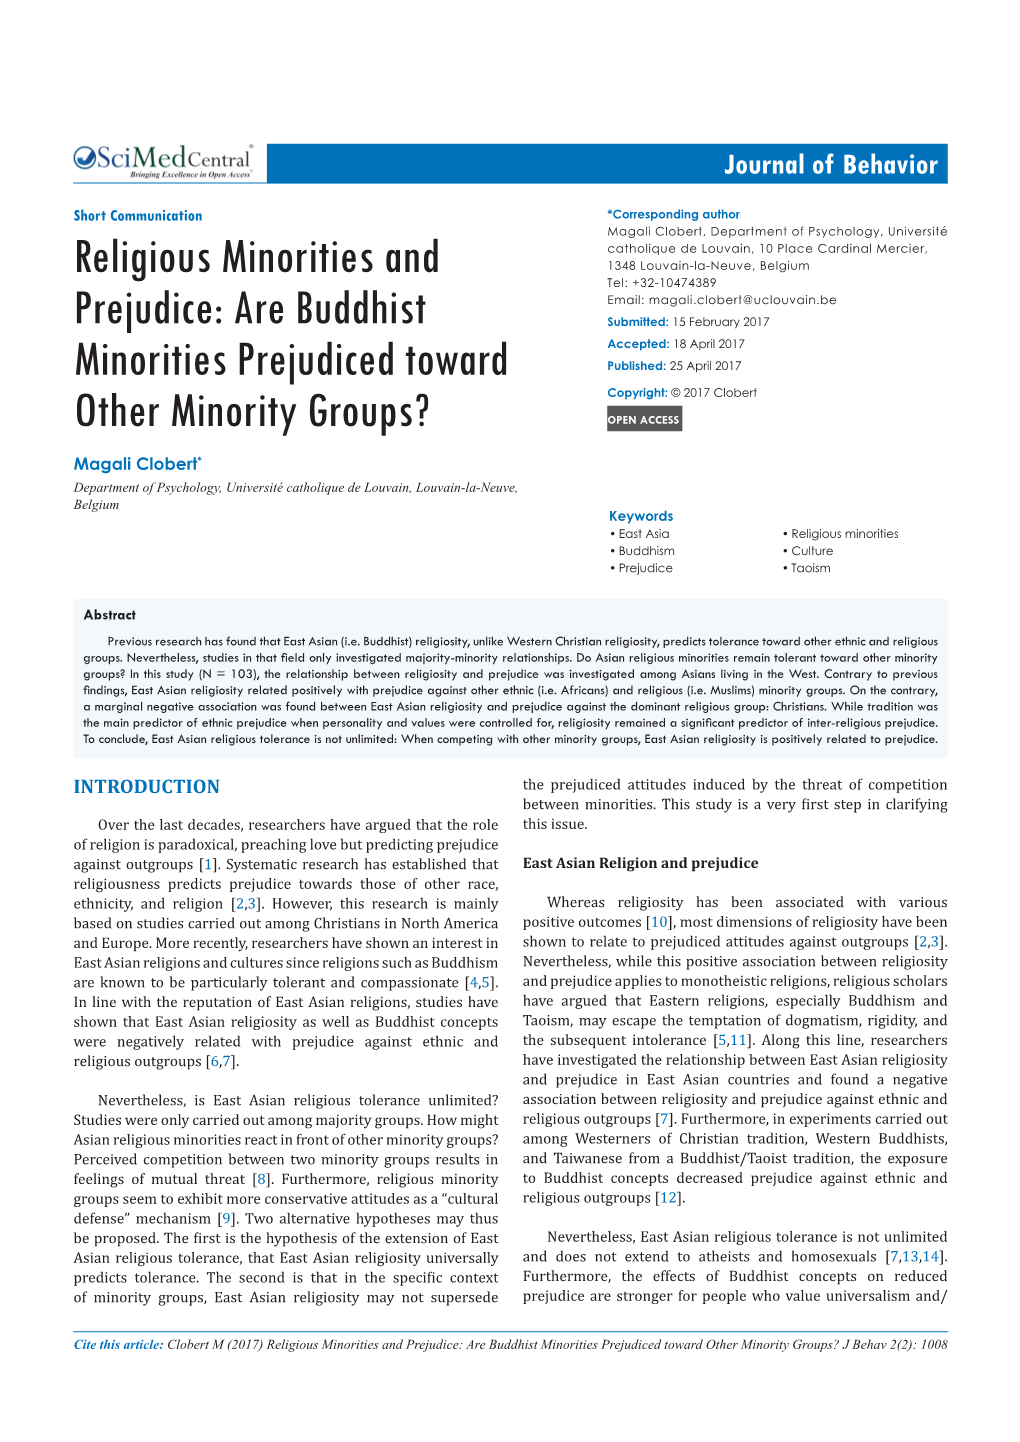 Religious Minorities and Prejudice